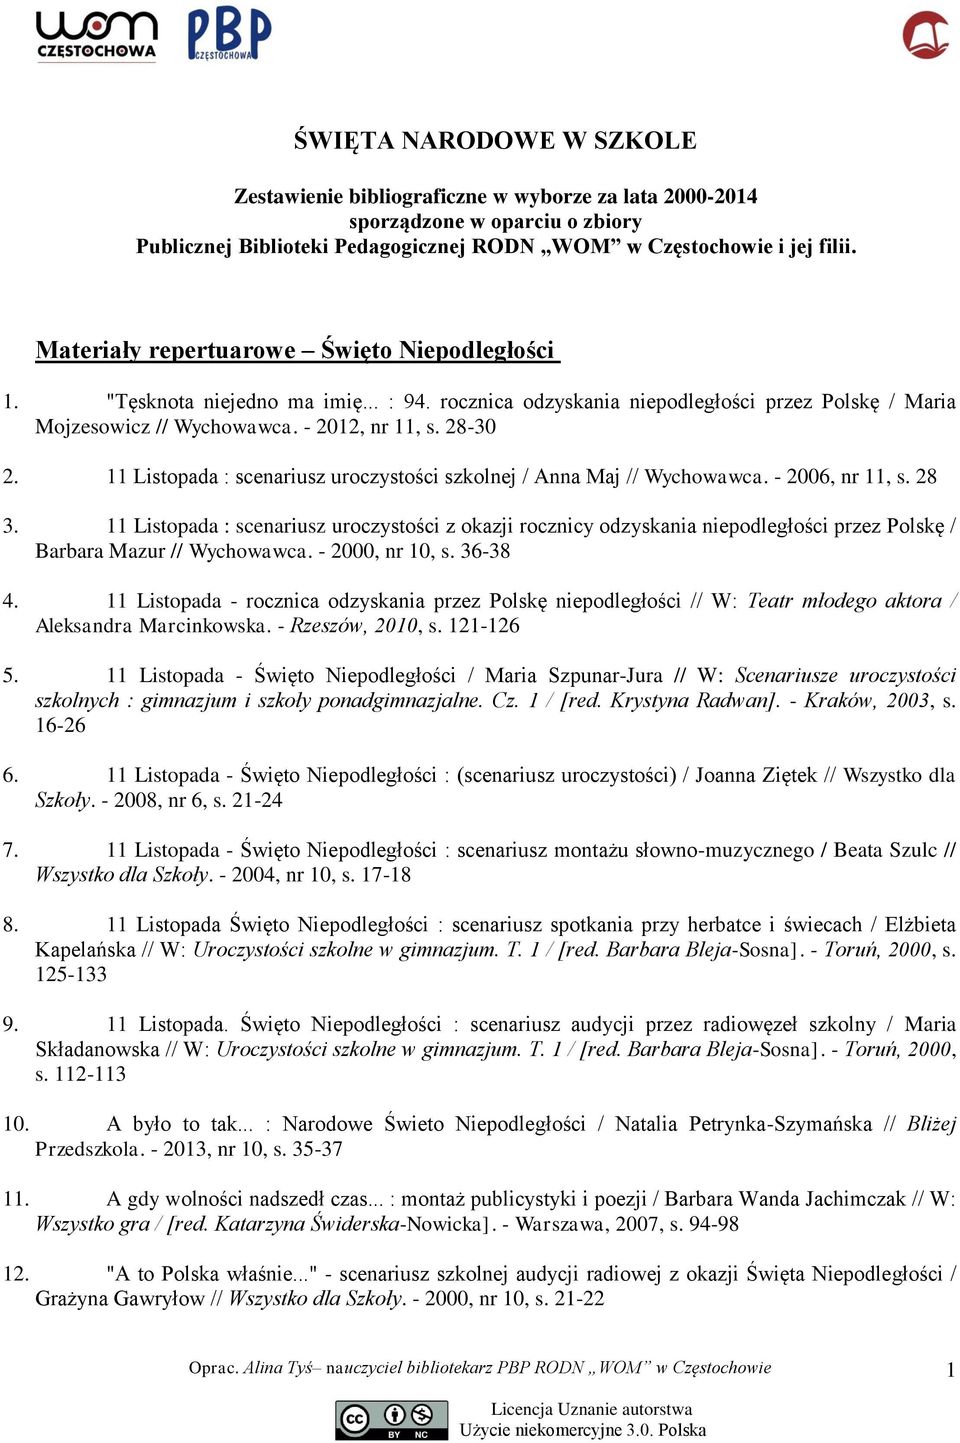 11 Listopada : scenariusz uroczystości szkolnej / Anna Maj // Wychowawca. - 2006, nr 11, s. 28 3.